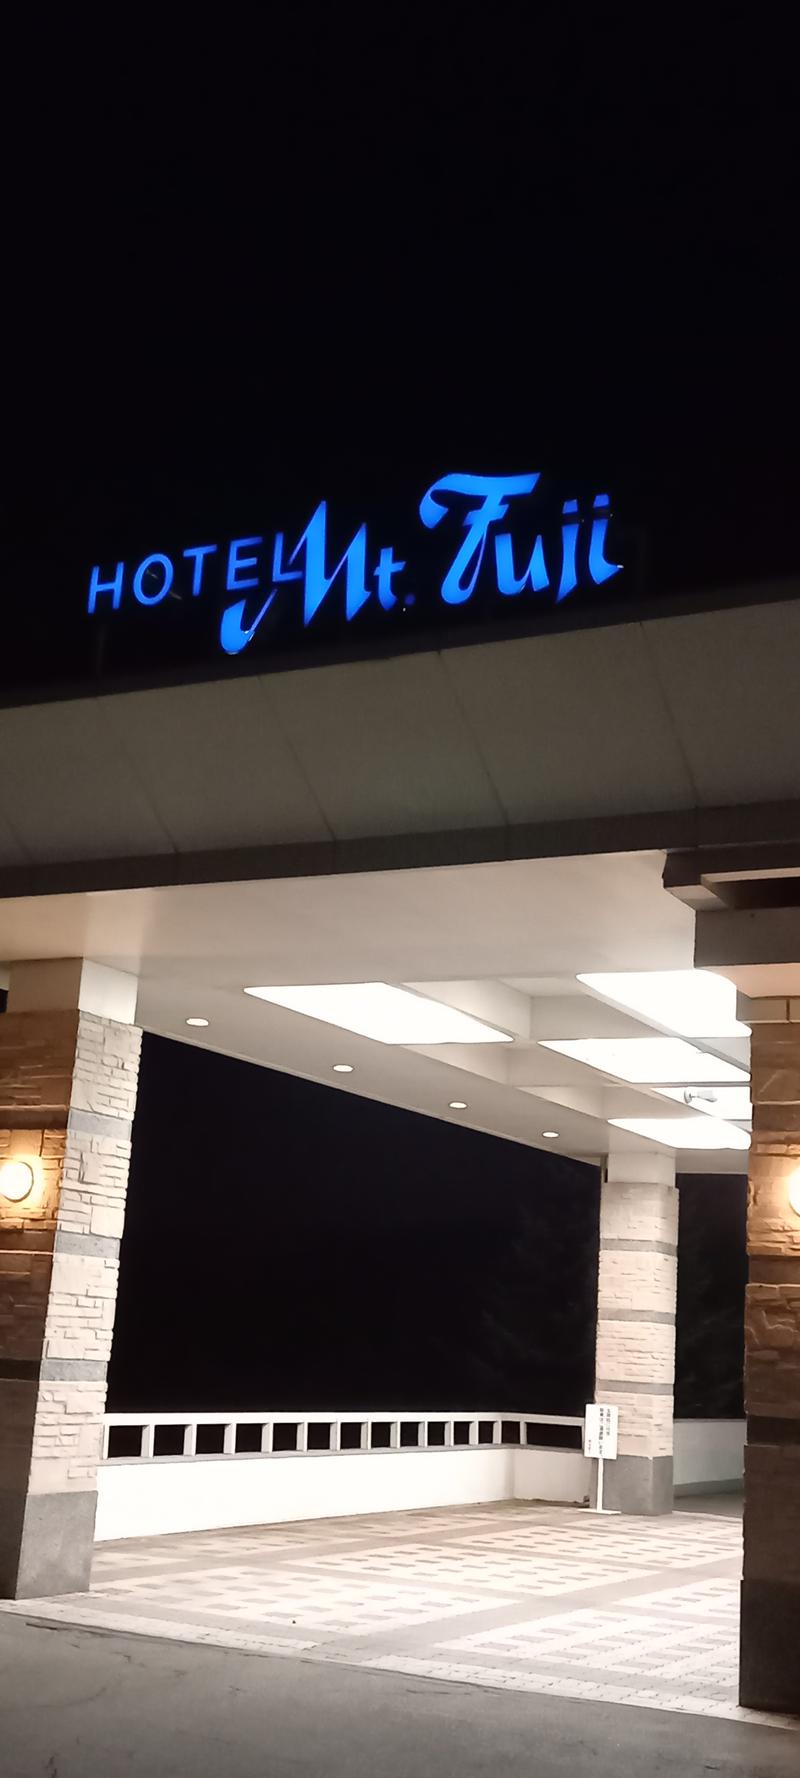 あみ@サ活さんのホテルマウント富士のサ活写真